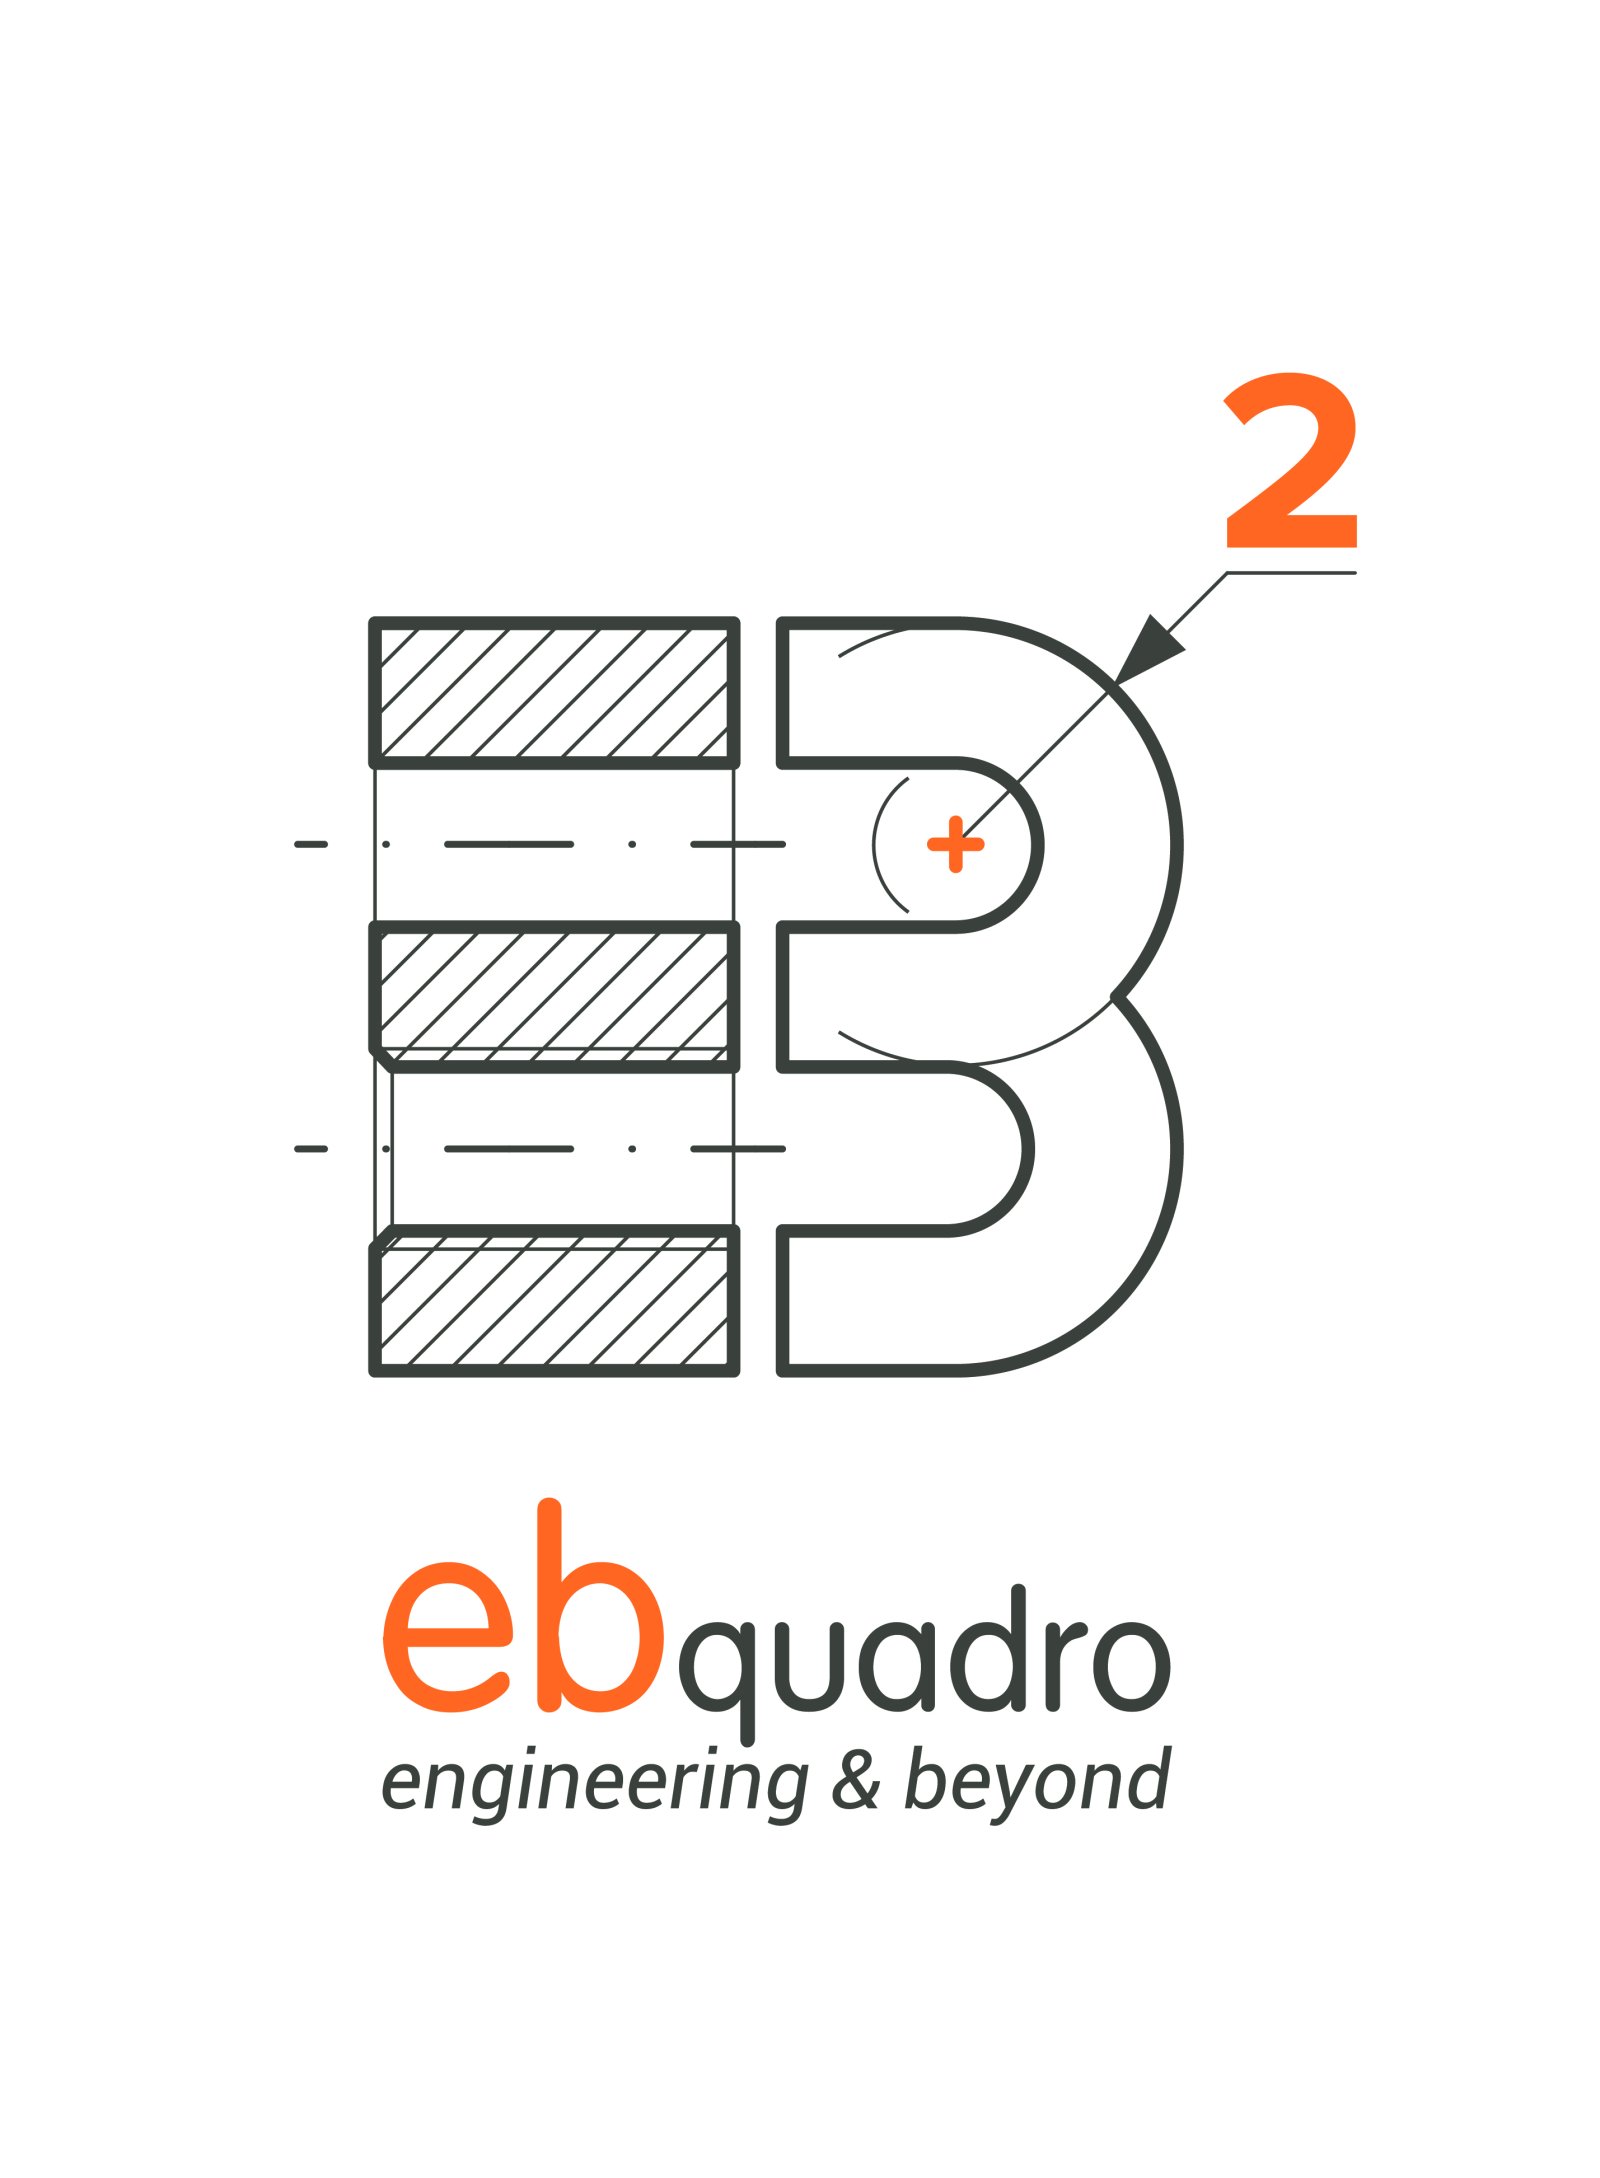 Logo ebquadro - engineering & beyond